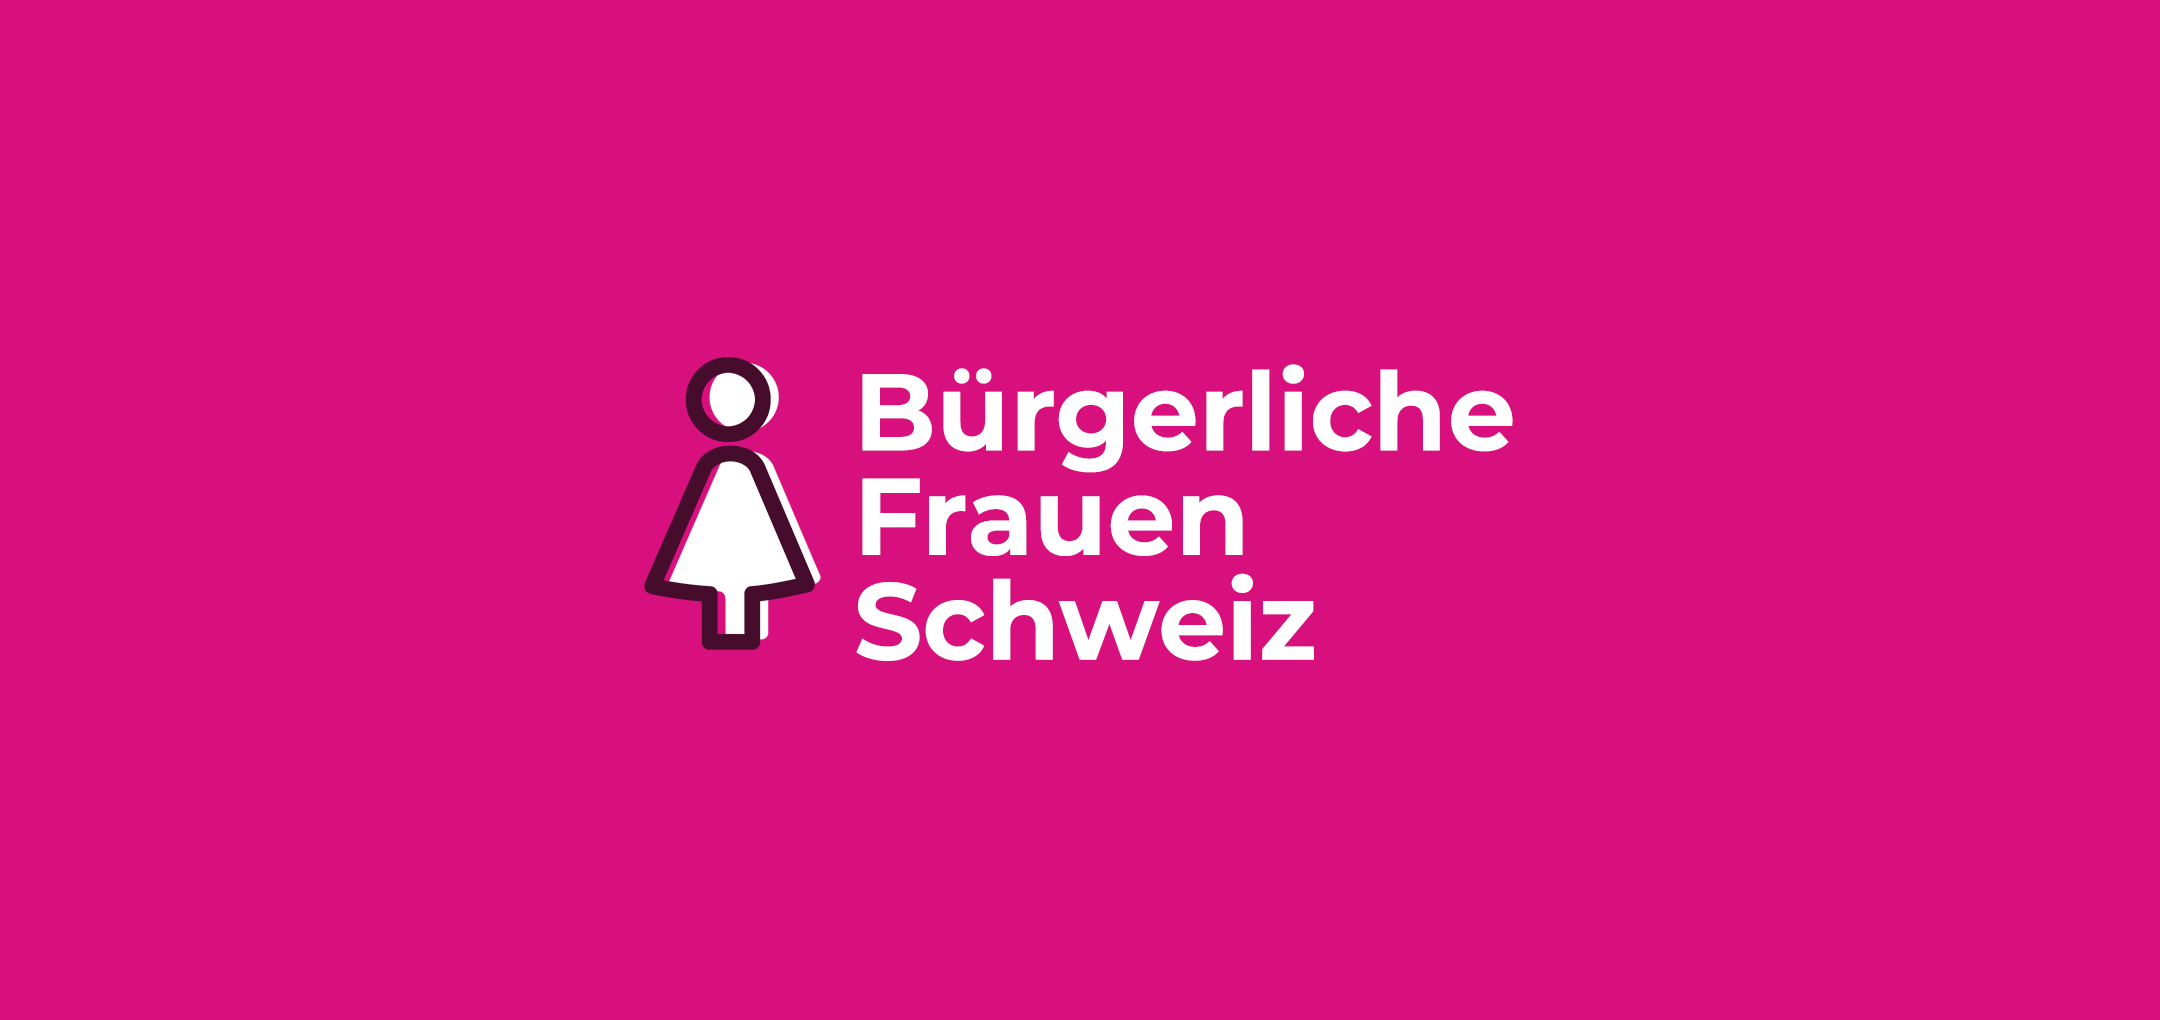 (c) Buergerliche-frauen.ch